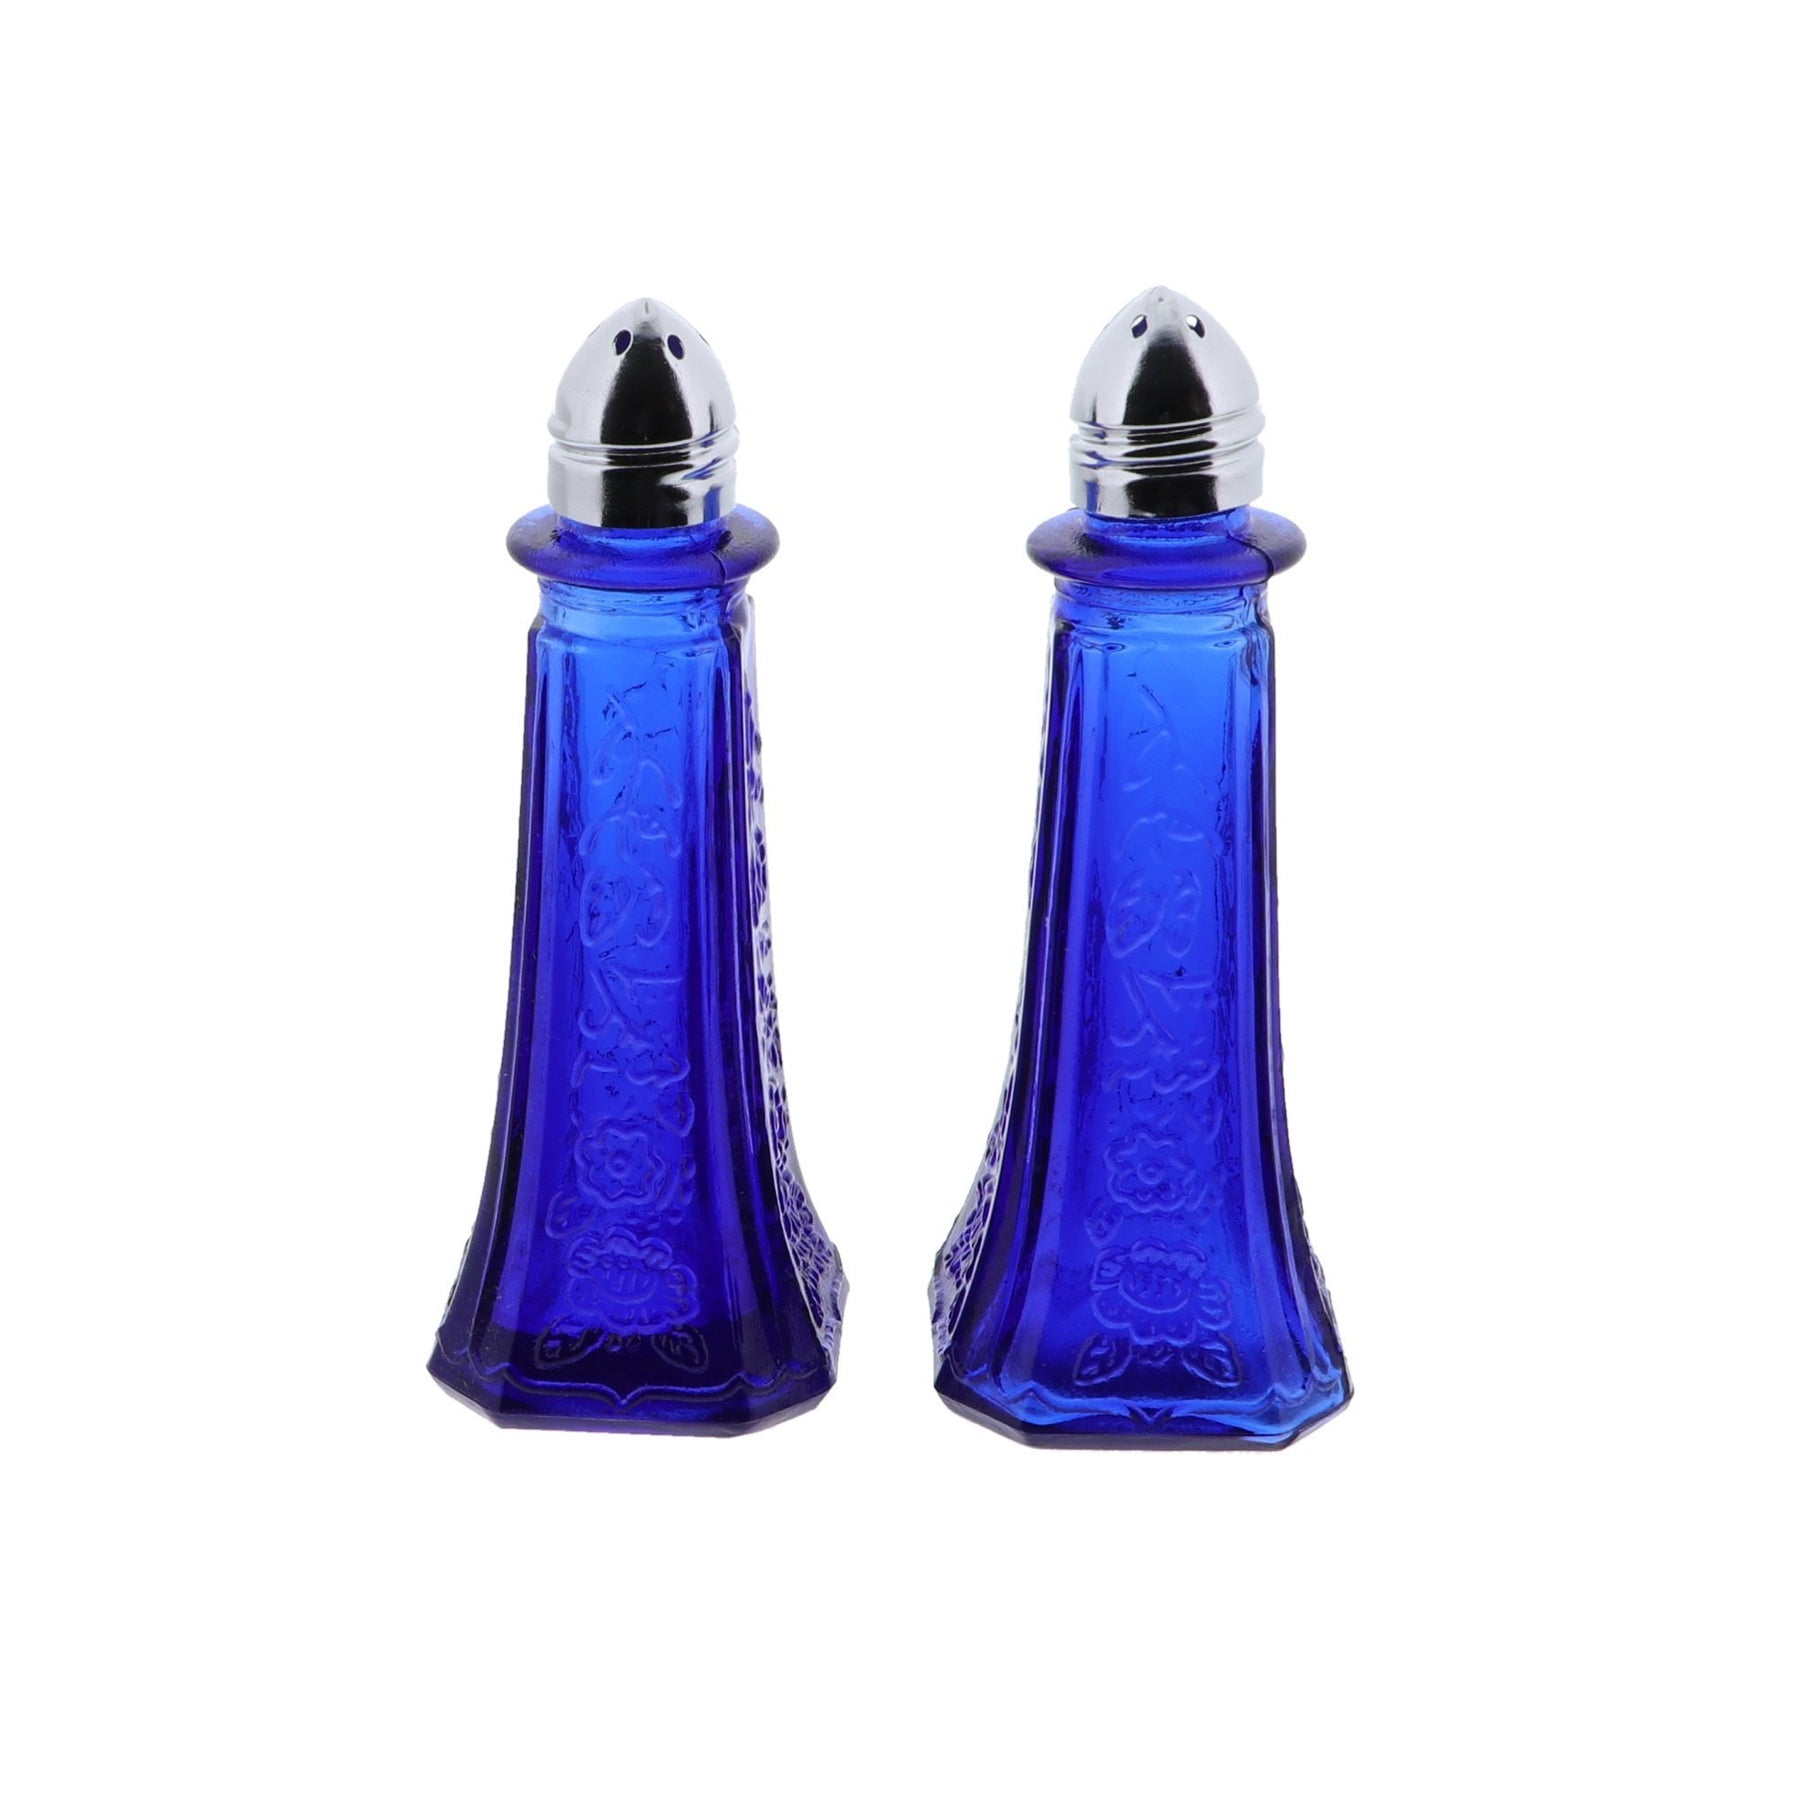 https://servettehome.com/cdn/shop/products/Blue-Depression-Glass-Salt-Shaker-Set-Blue-Front-604827_1800x1800.jpg?v=1630004562